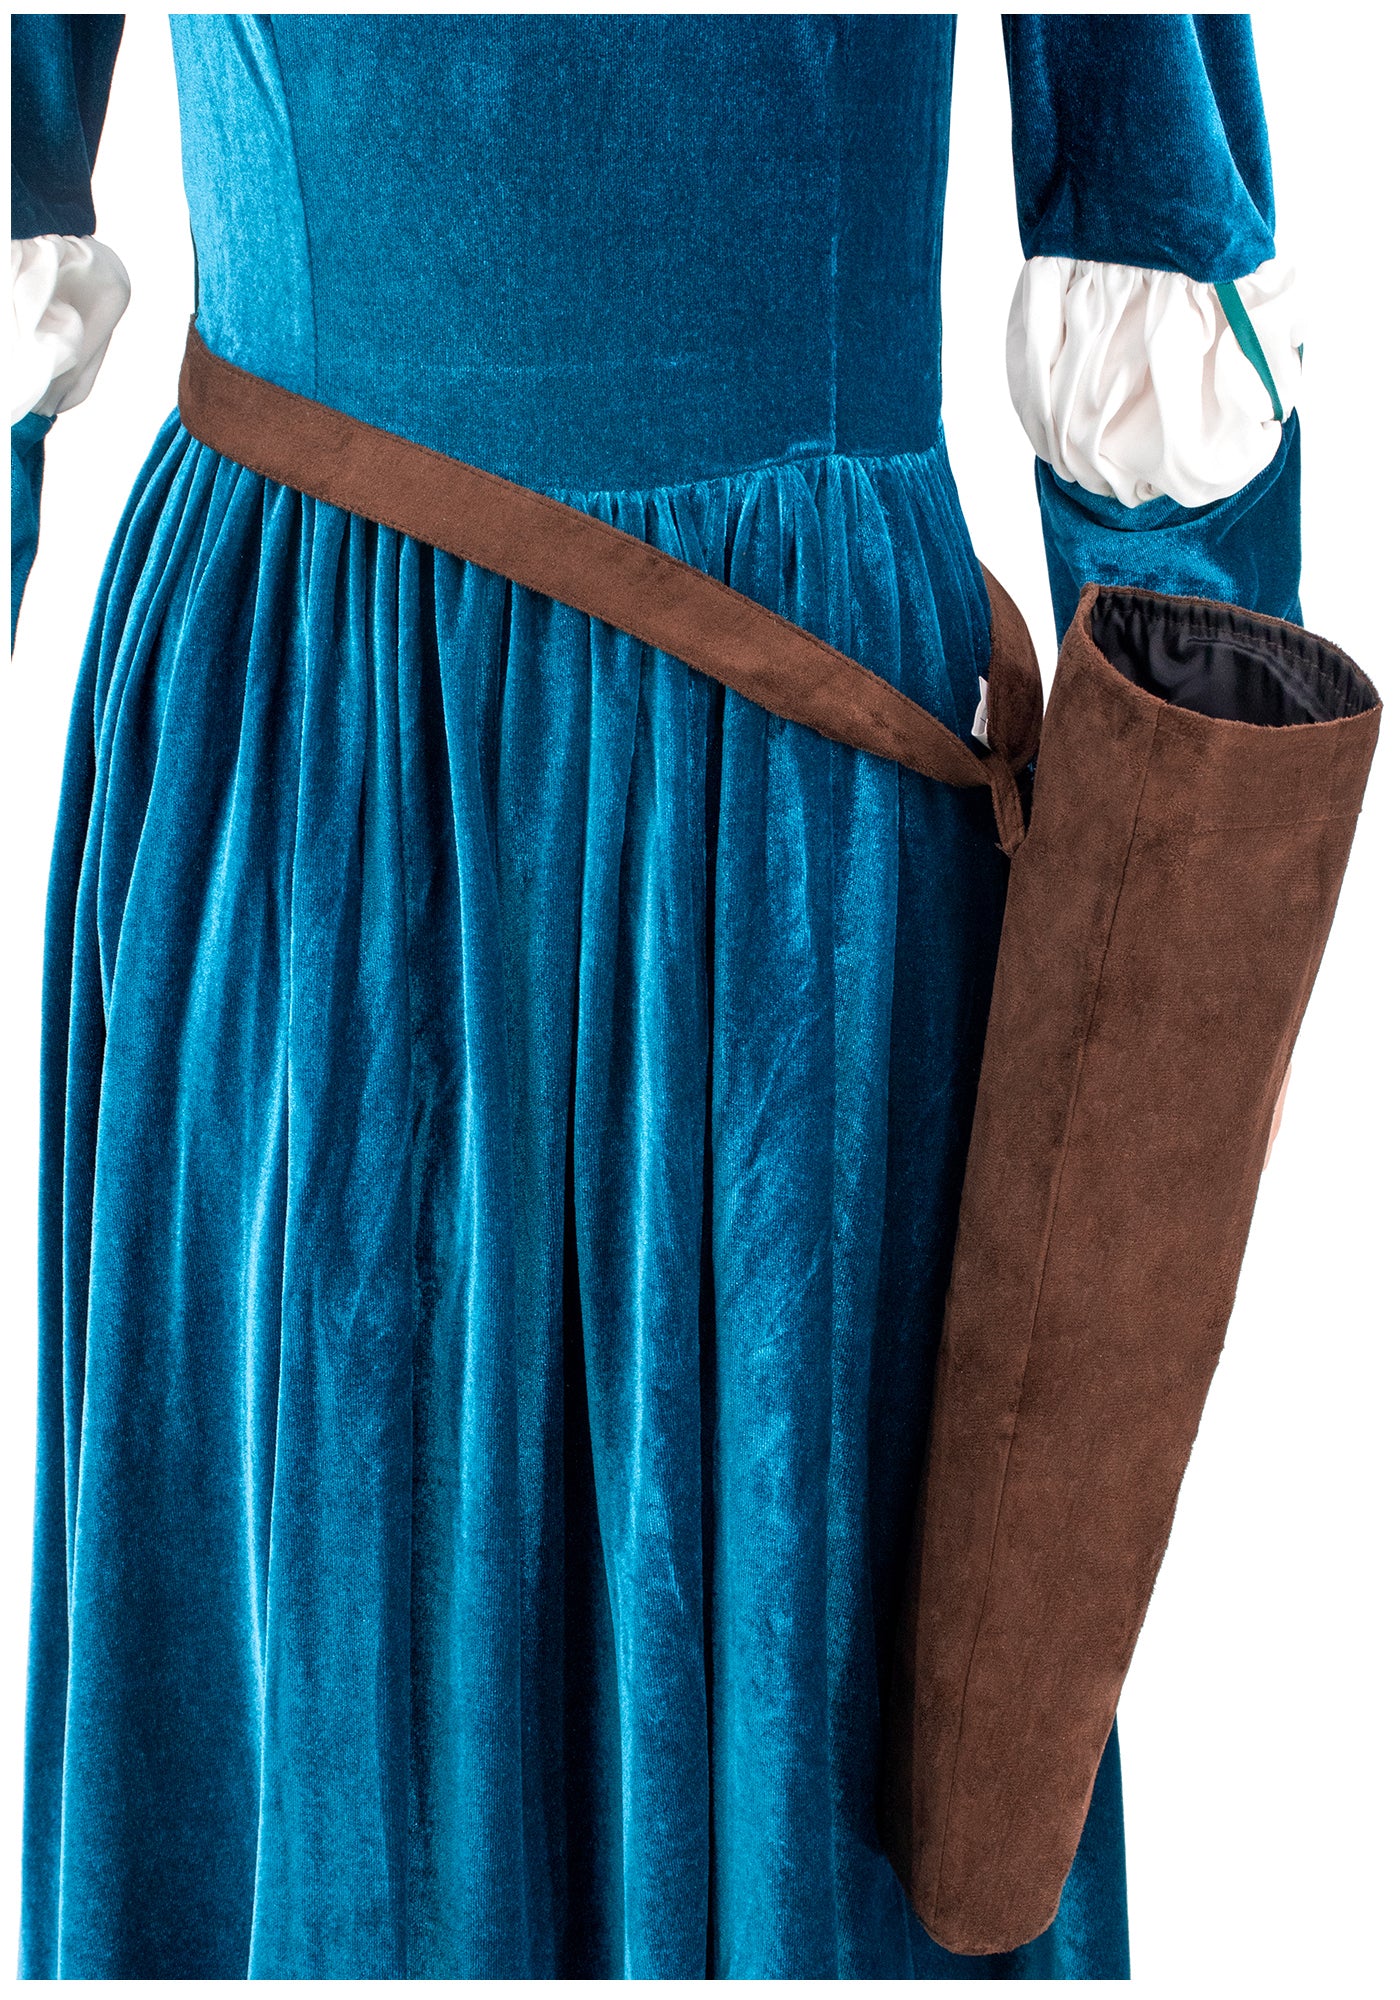 Courageuse Princesse Cosplay Costume Renaissance Médiévale Robe avec Carquois